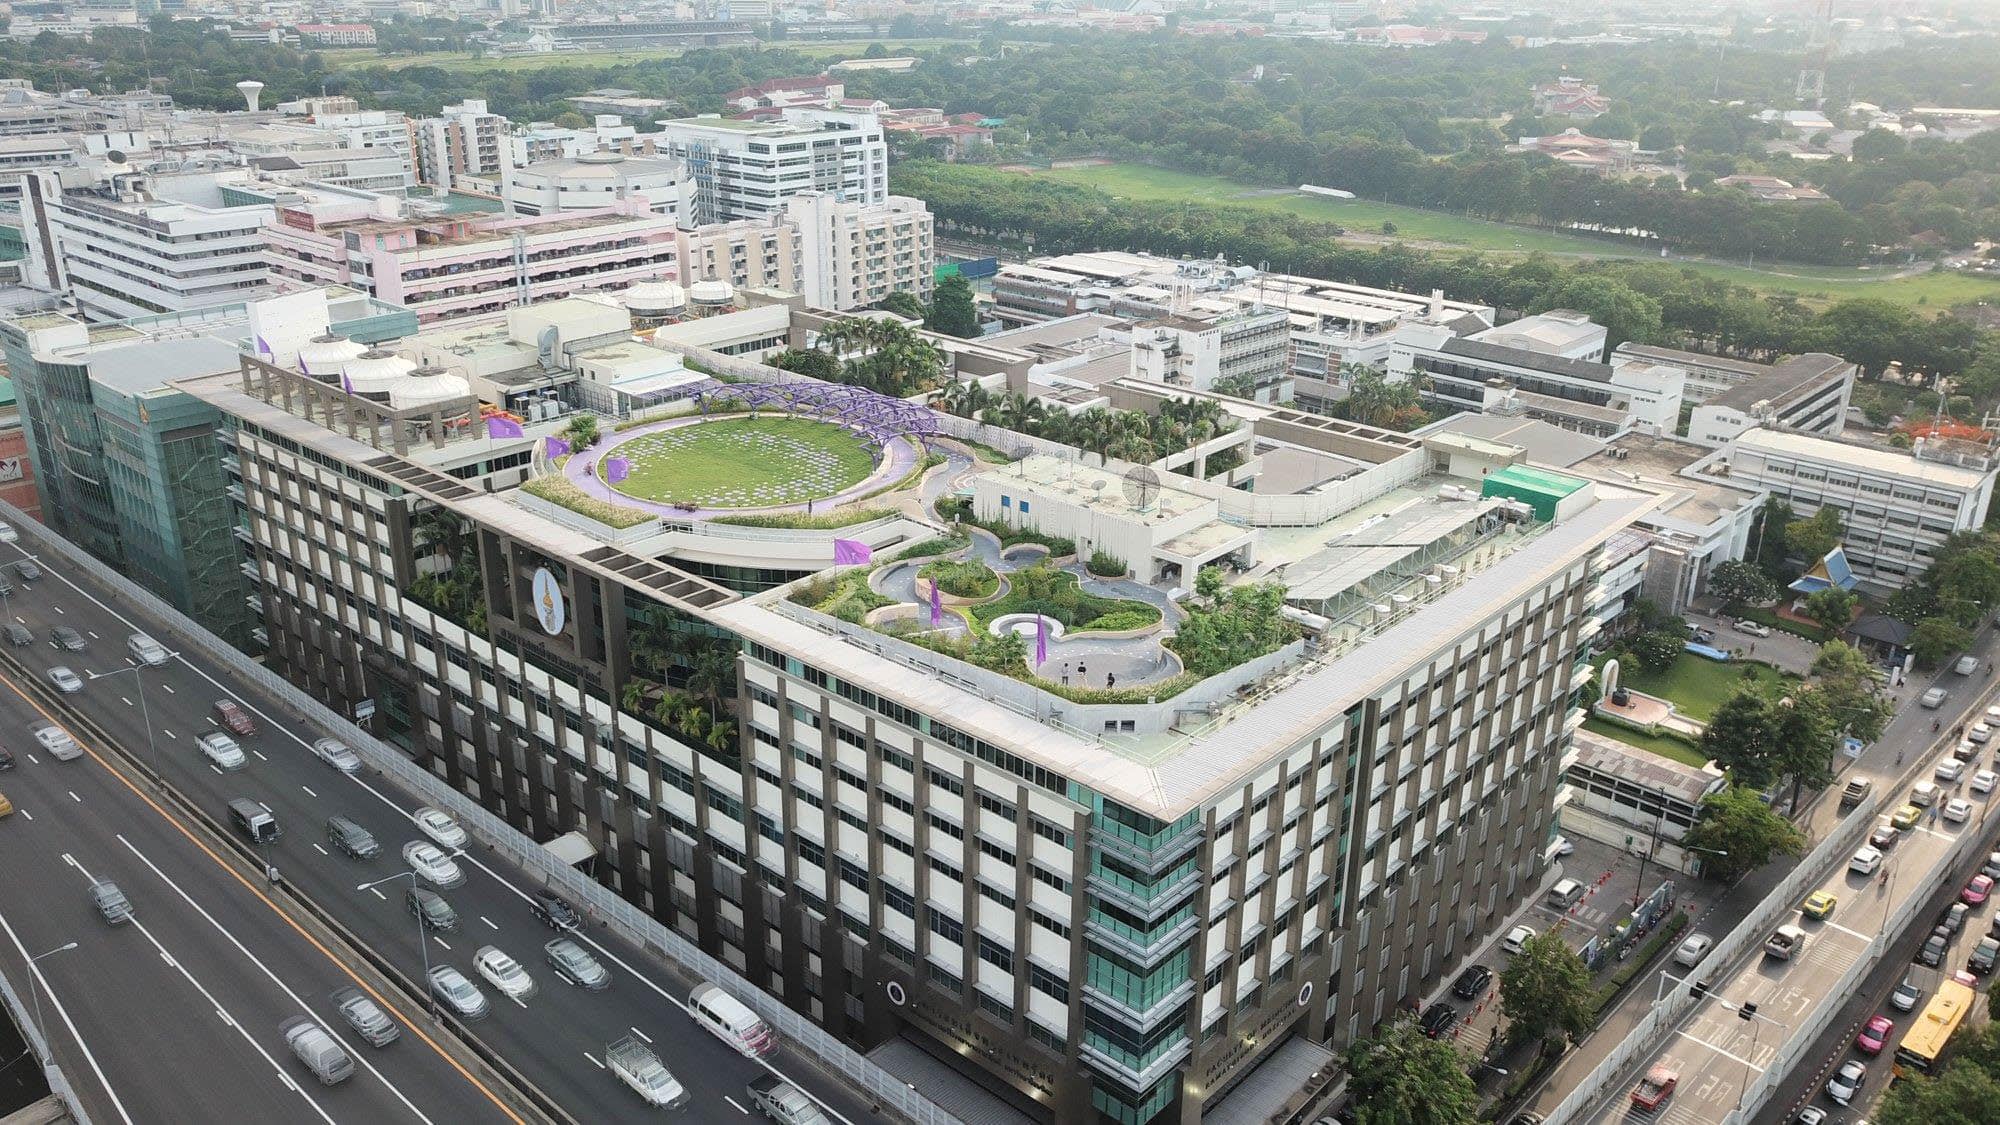 มุมจากด้านบนของสวนบำบัดลอยฟ้าที่ใหญ่ที่สุดในประเทศไทย ณ อาคารสมเด็จพระเทพรัตน์ โรงพยาบาลรามาธิบดี